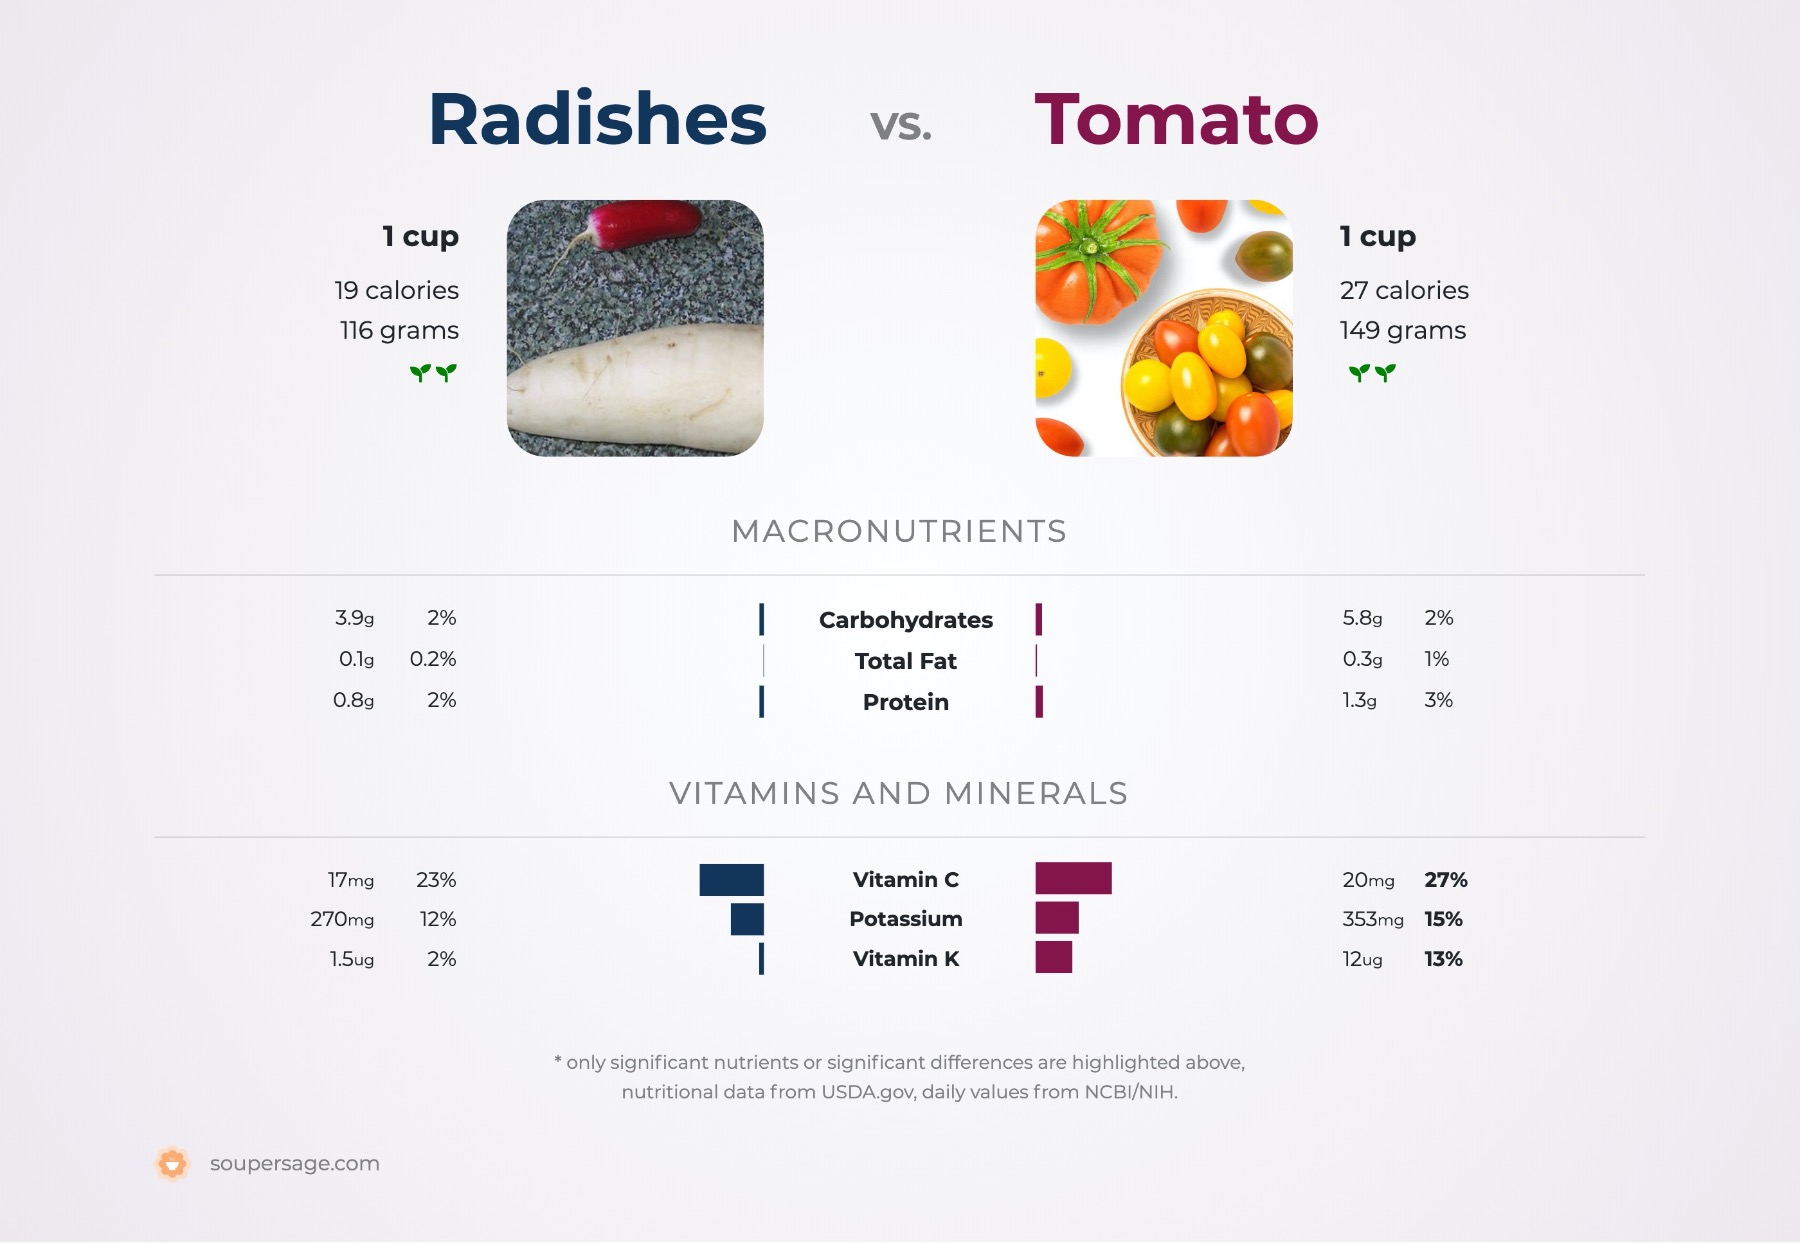 nutrition comparison of radishes vs. tomato